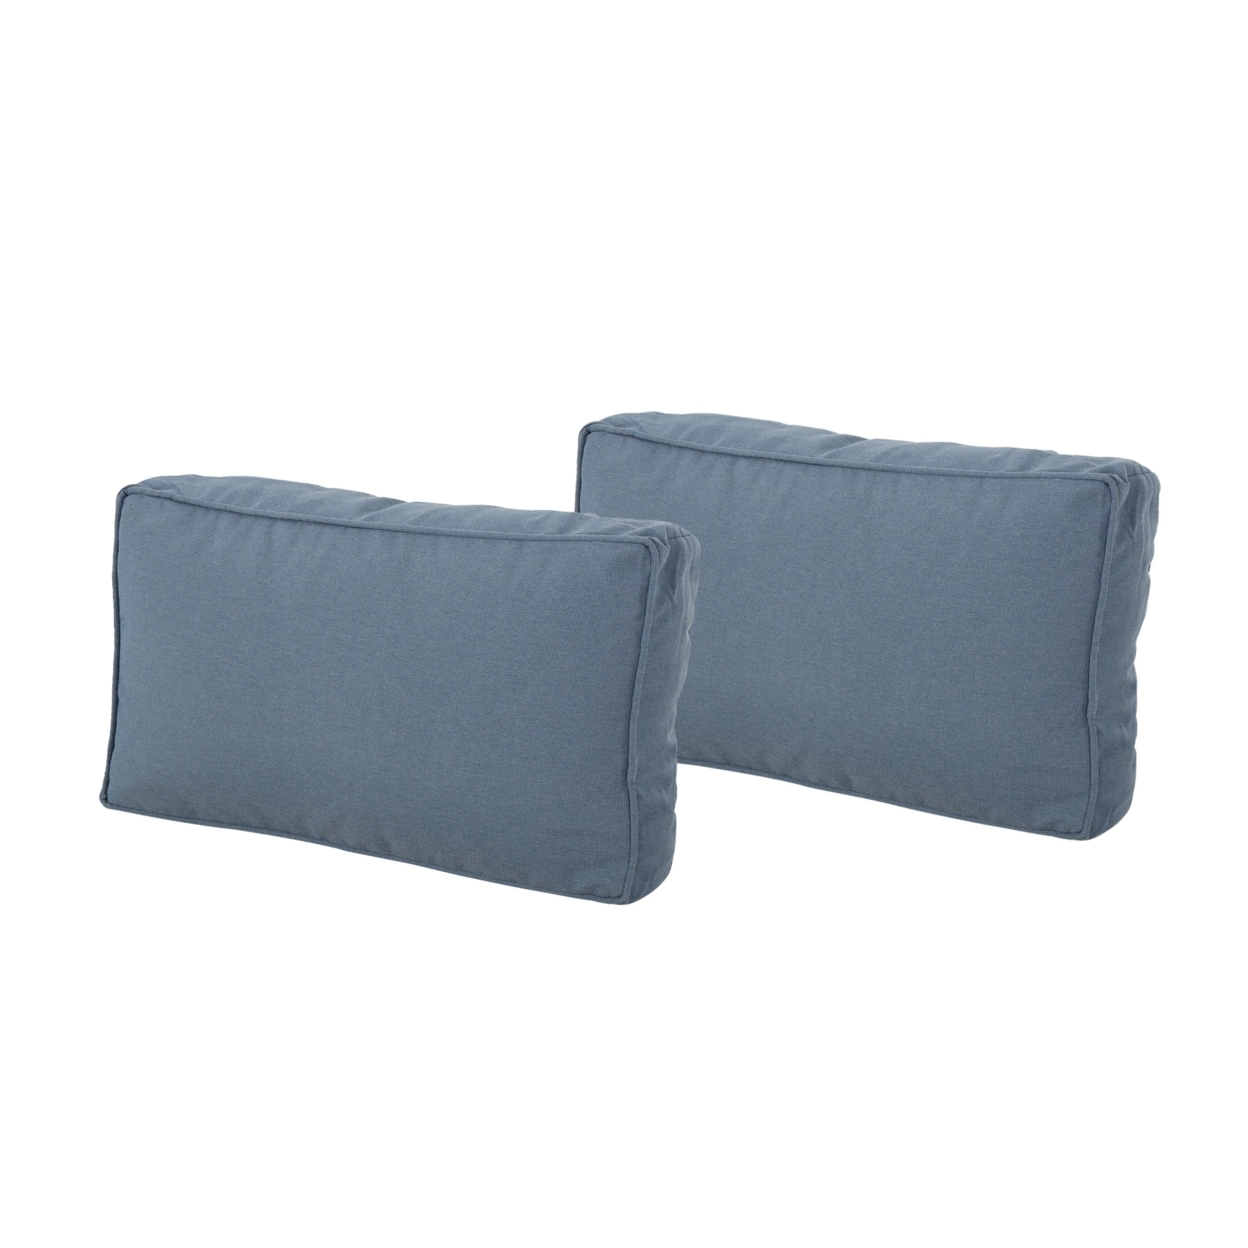 Rydder Coast Outdoor Rectanglular Water Resistant 12x20 Lumbar Pillows - Blue